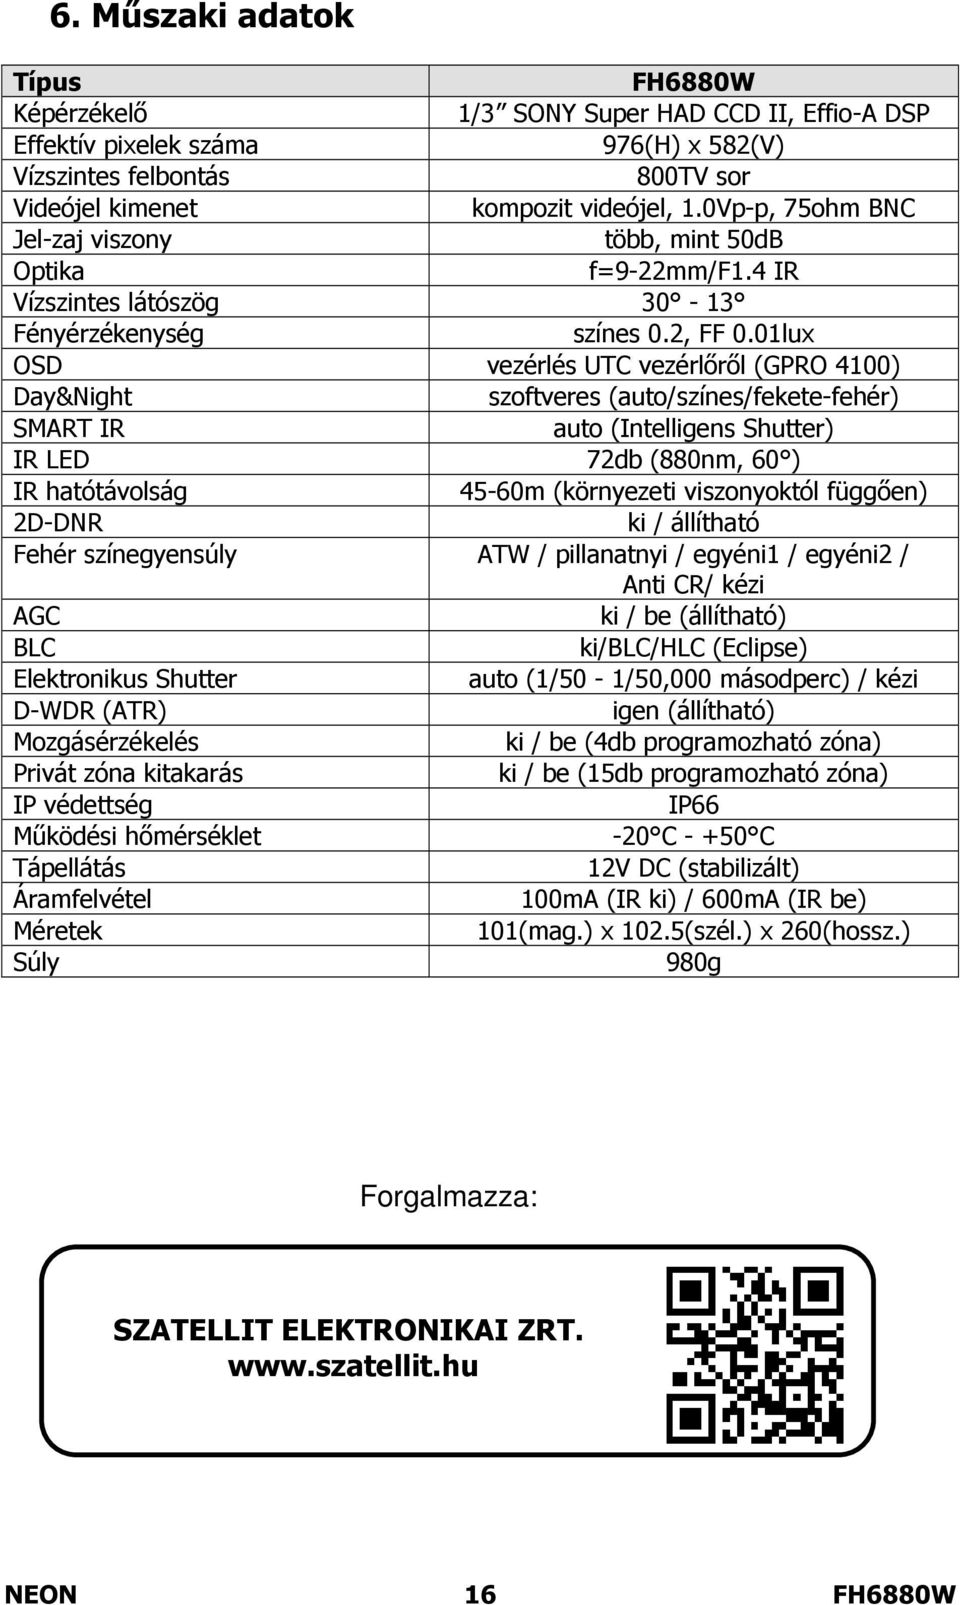 01lux OSD vezérlés UTC vezérlőről (GPRO 4100) Day&Night szoftveres (auto/színes/fekete-fehér) SMART IR auto (Intelligens Shutter) IR LED 72db (880nm, 60 ) IR hatótávolság 45-60m (környezeti